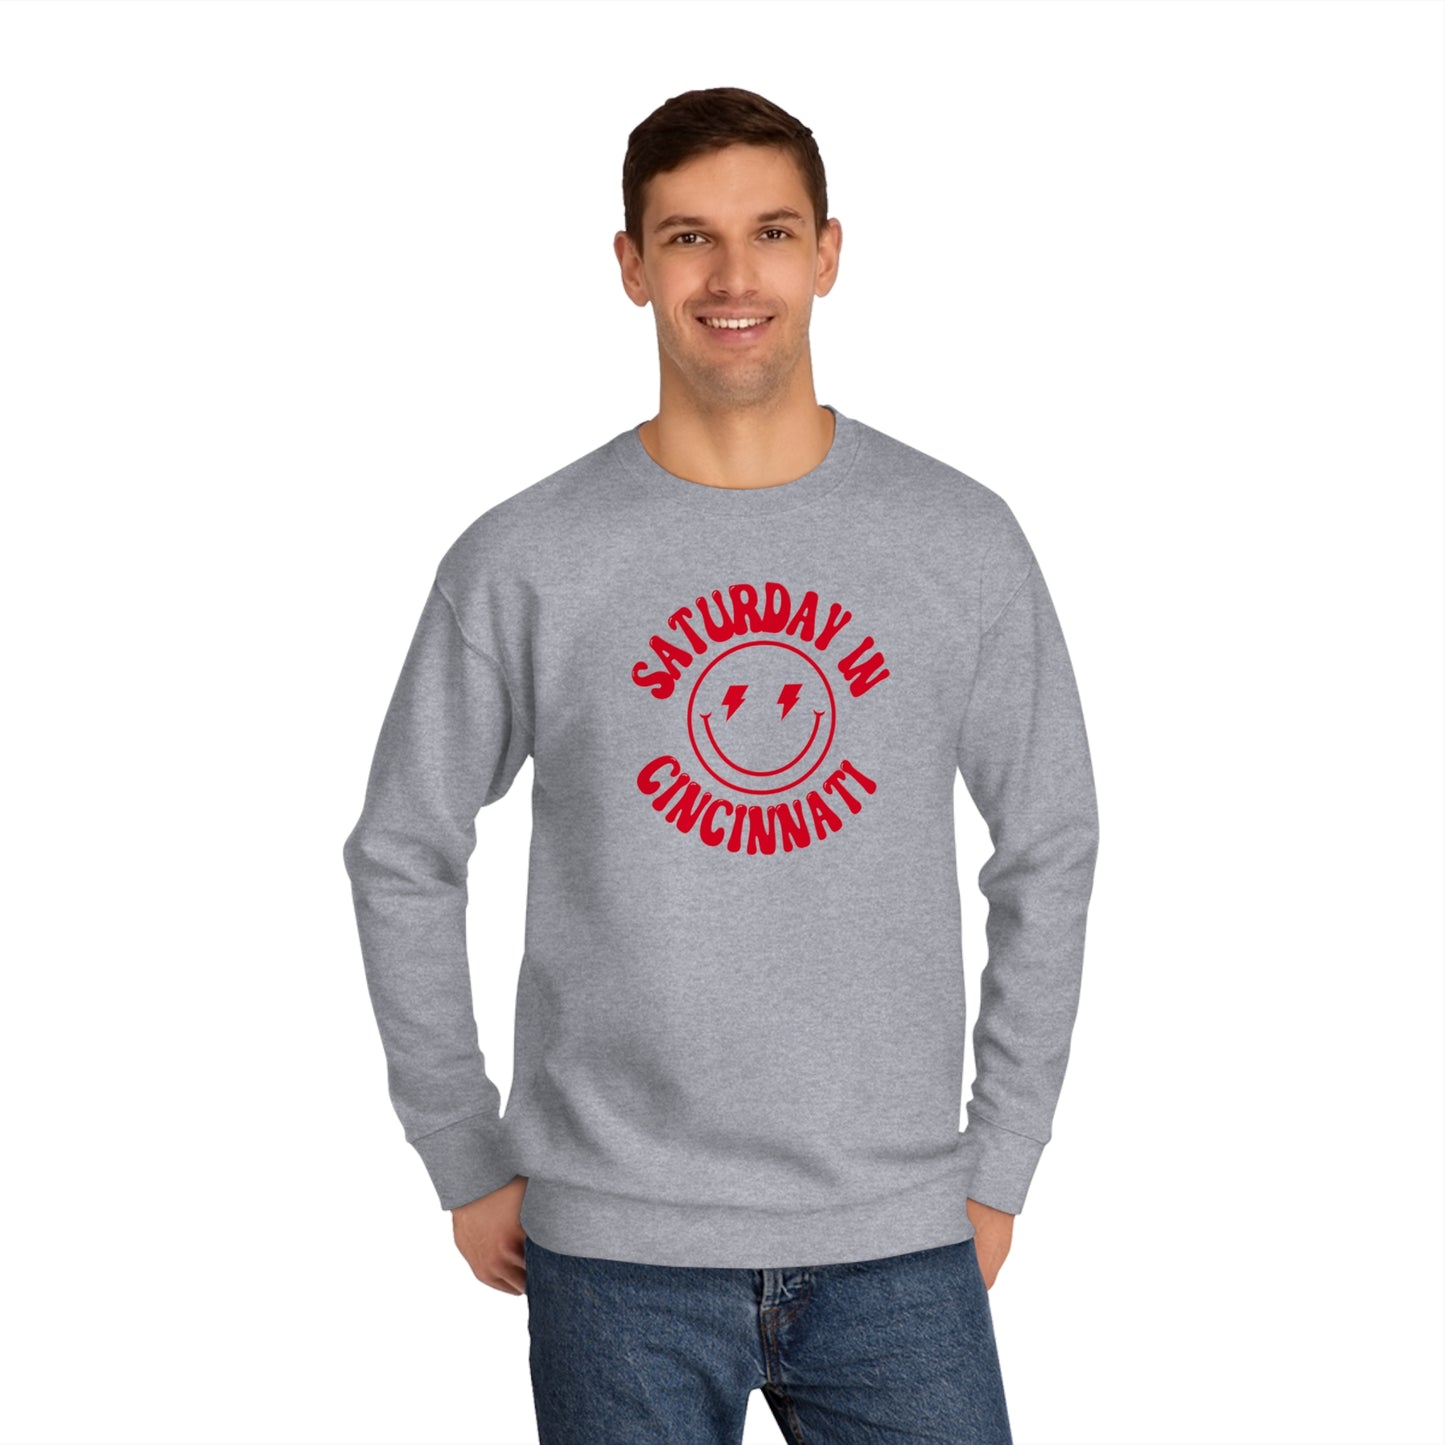 Smiley Cincinnati Crew Sweatshirt